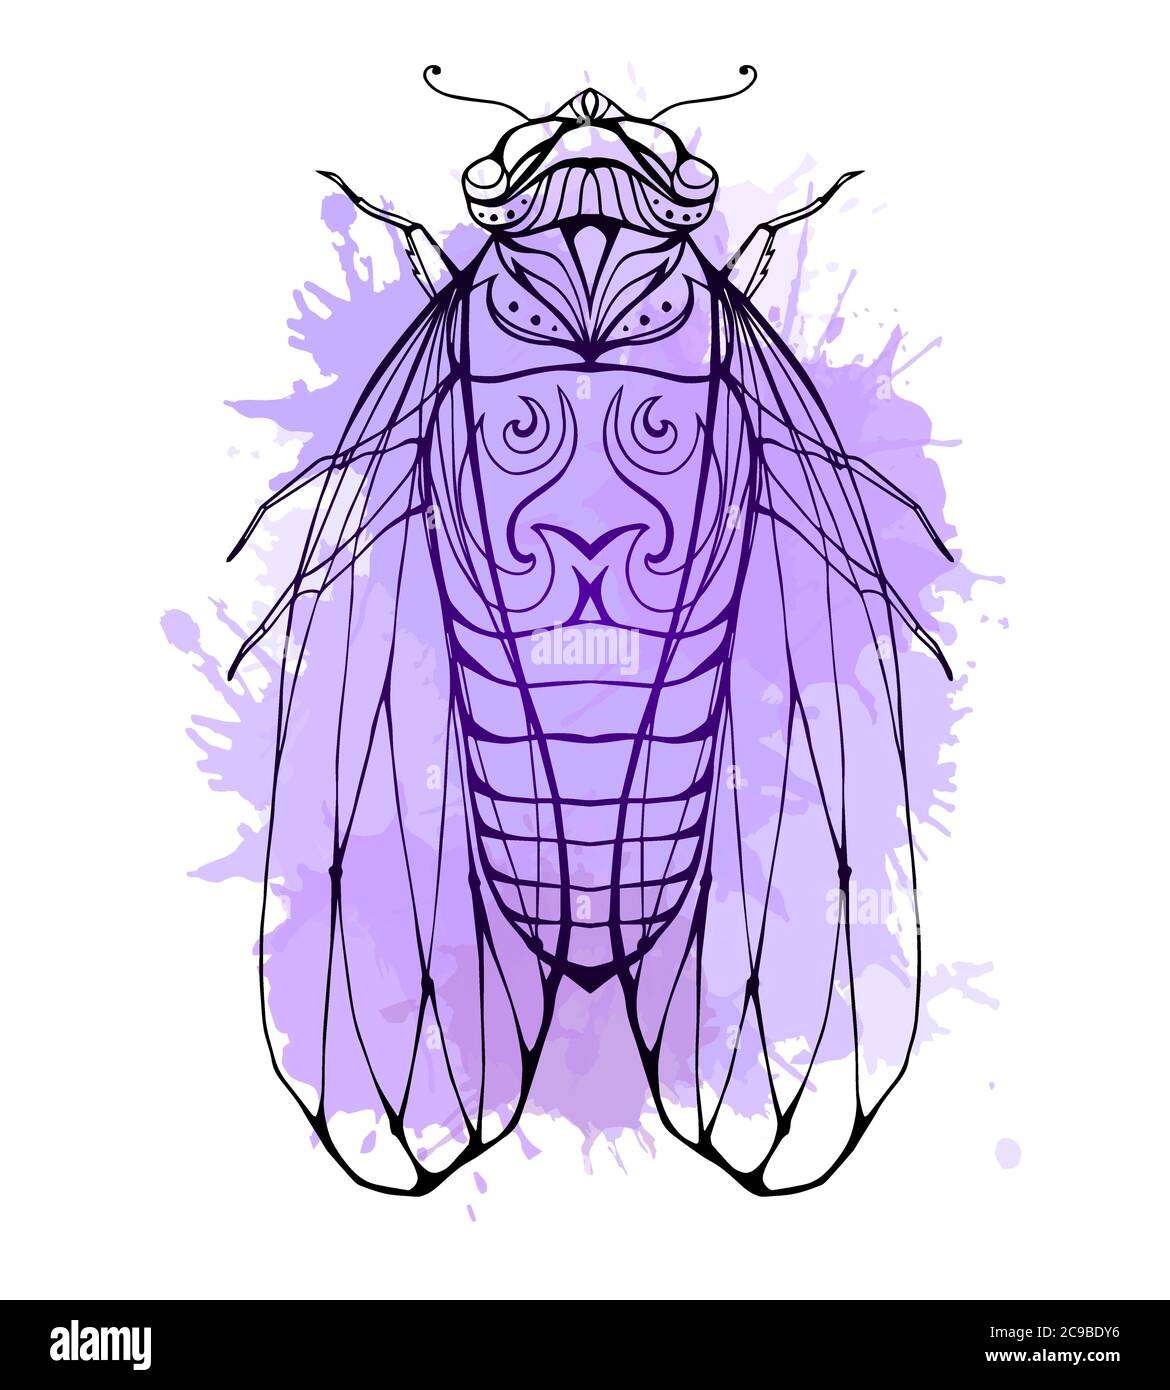 Illustration cicada avec motif boho et éclaboussures d'aquarelle. Elément vectoriel pour colorier les imprimés, pour les tee-shirts, les tatouages et un croquis pour votre creati Illustration de Vecteur